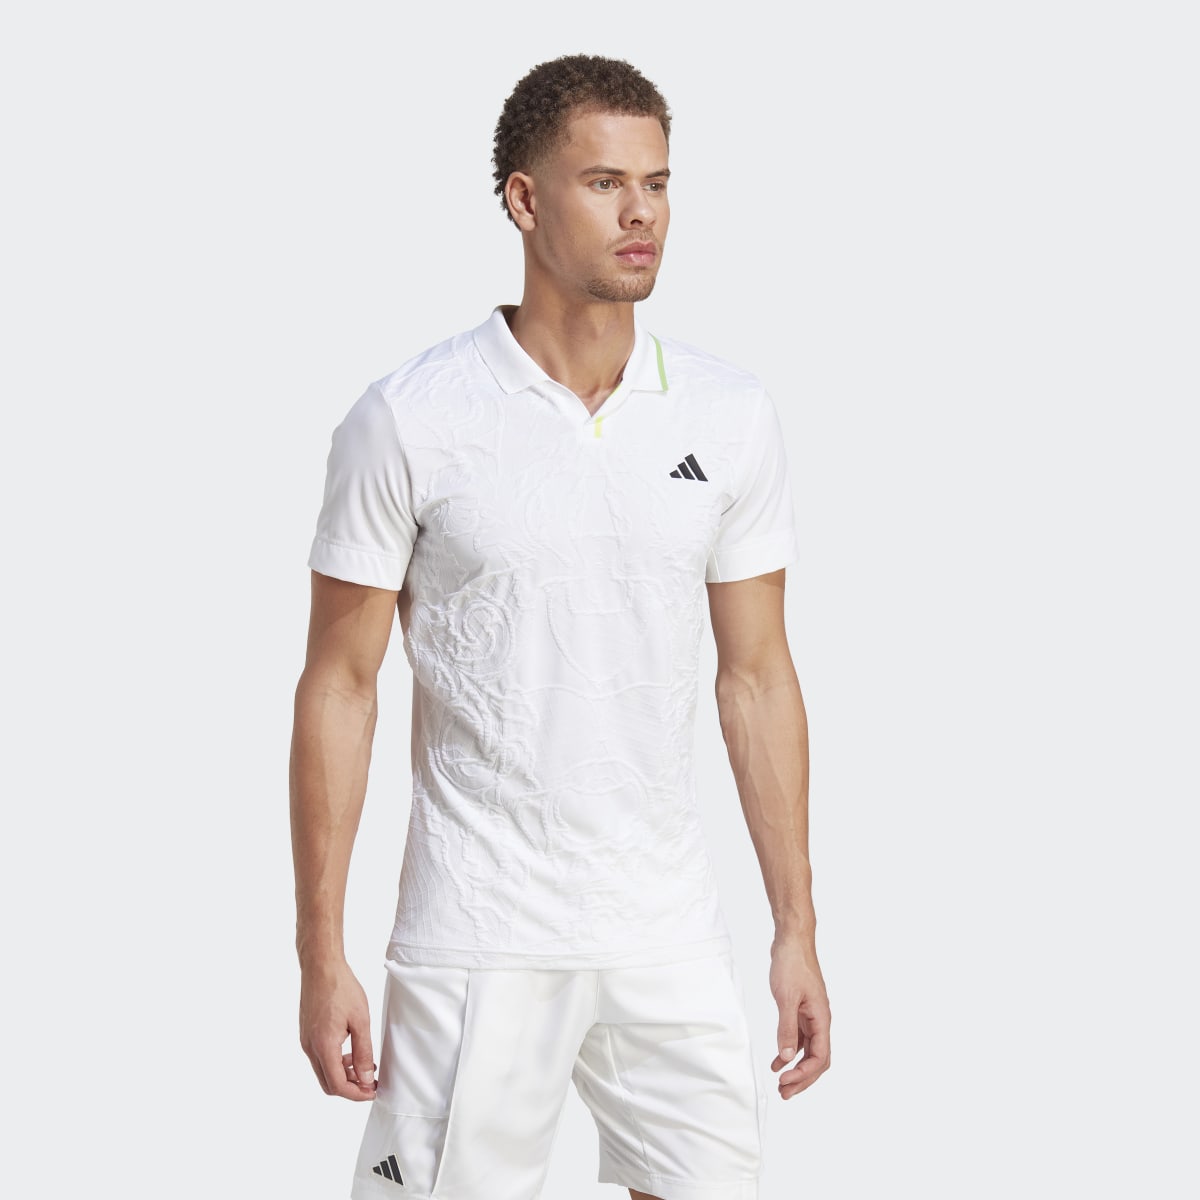 Adidas AEROREADY FreeLift Pro Tennis Polo Shirt. 7